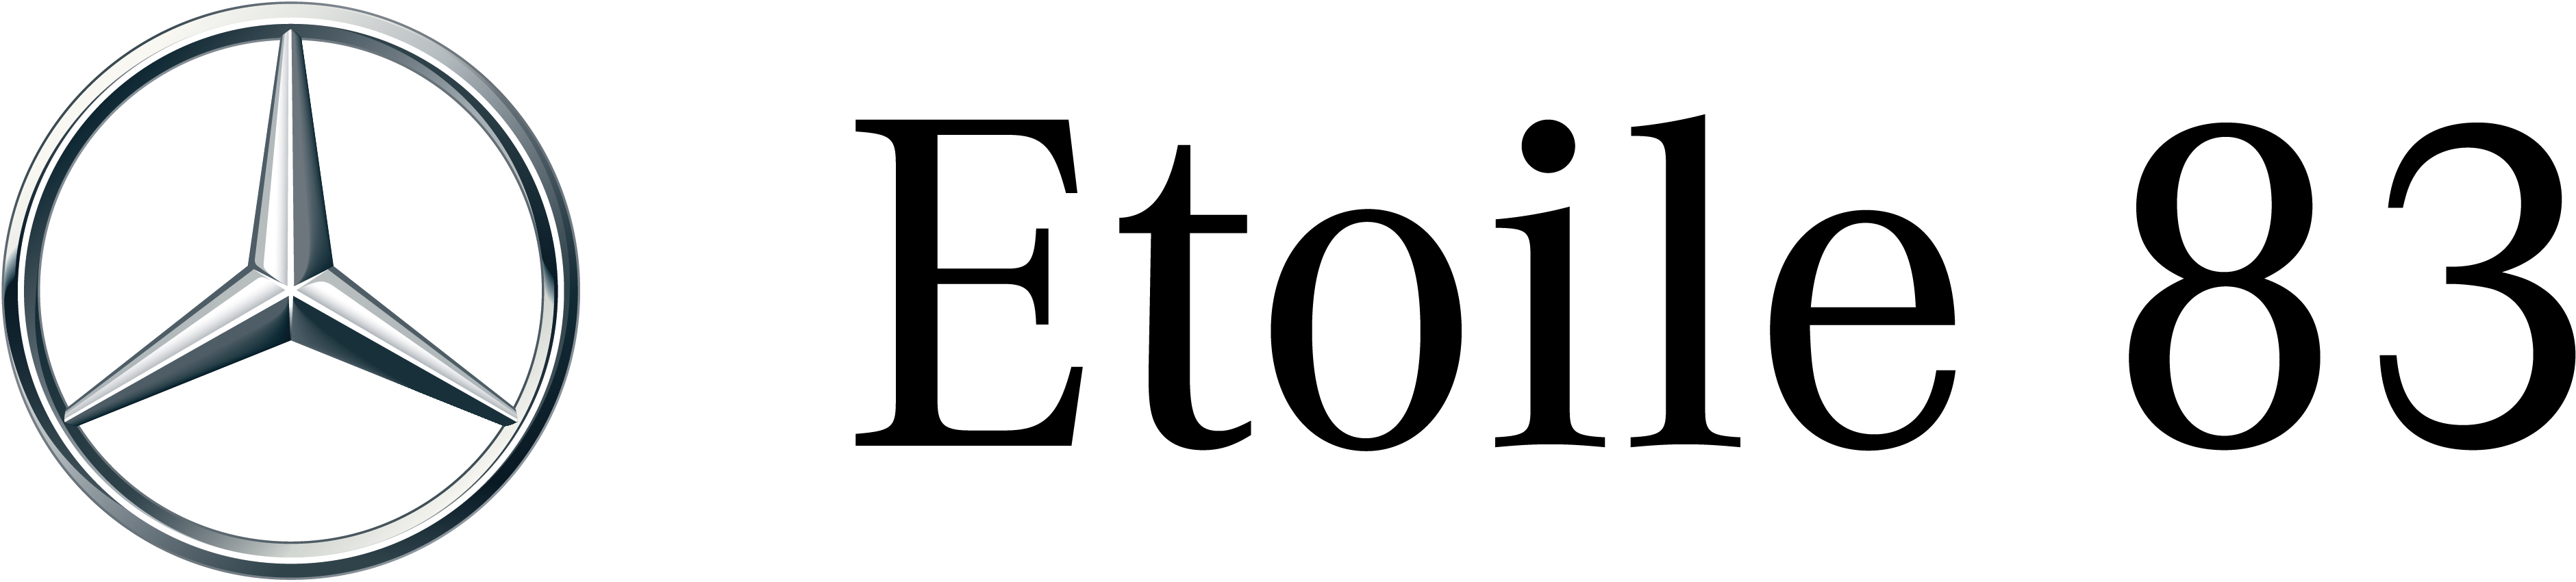 logo-etoile83